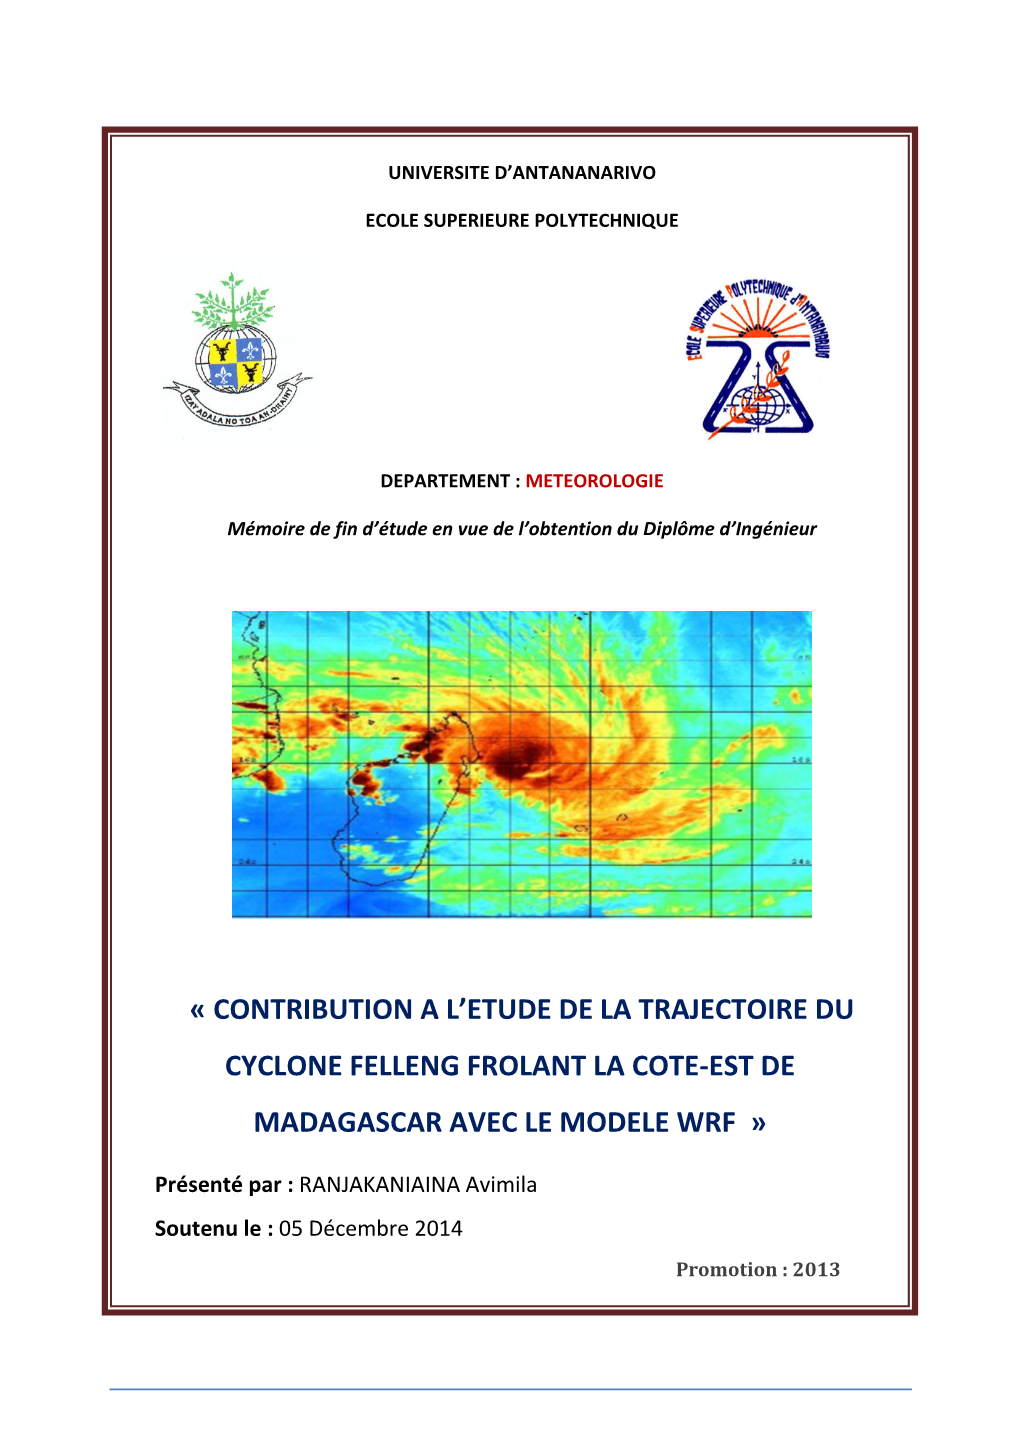 « Contribution a L'etude De La Trajectoire Du Cyclone